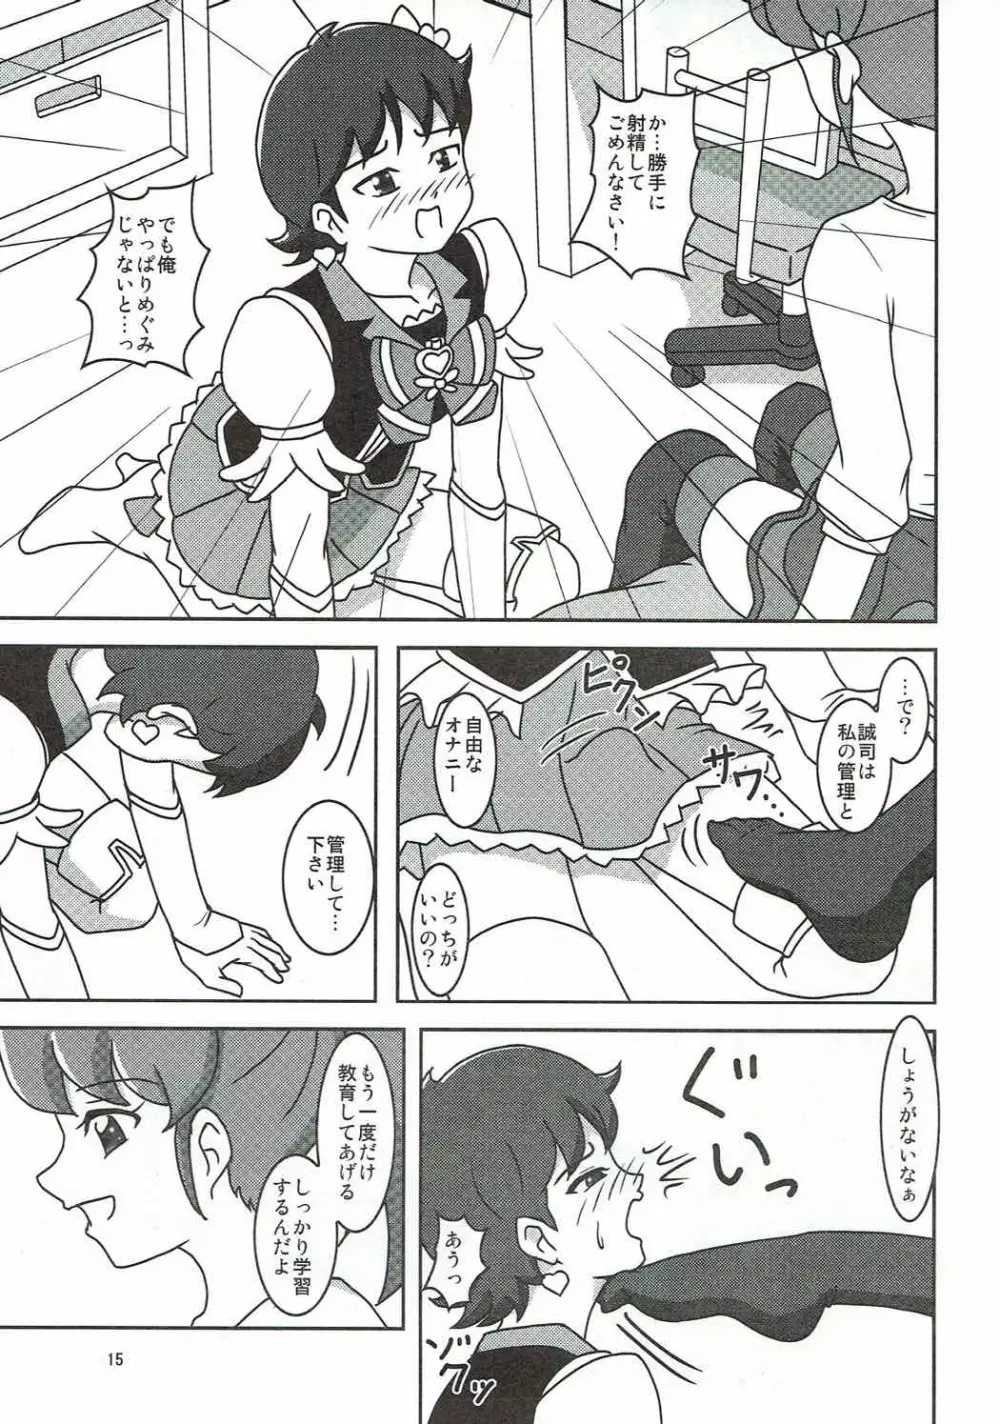 ハピネスチャージズリキュア!2 - page16